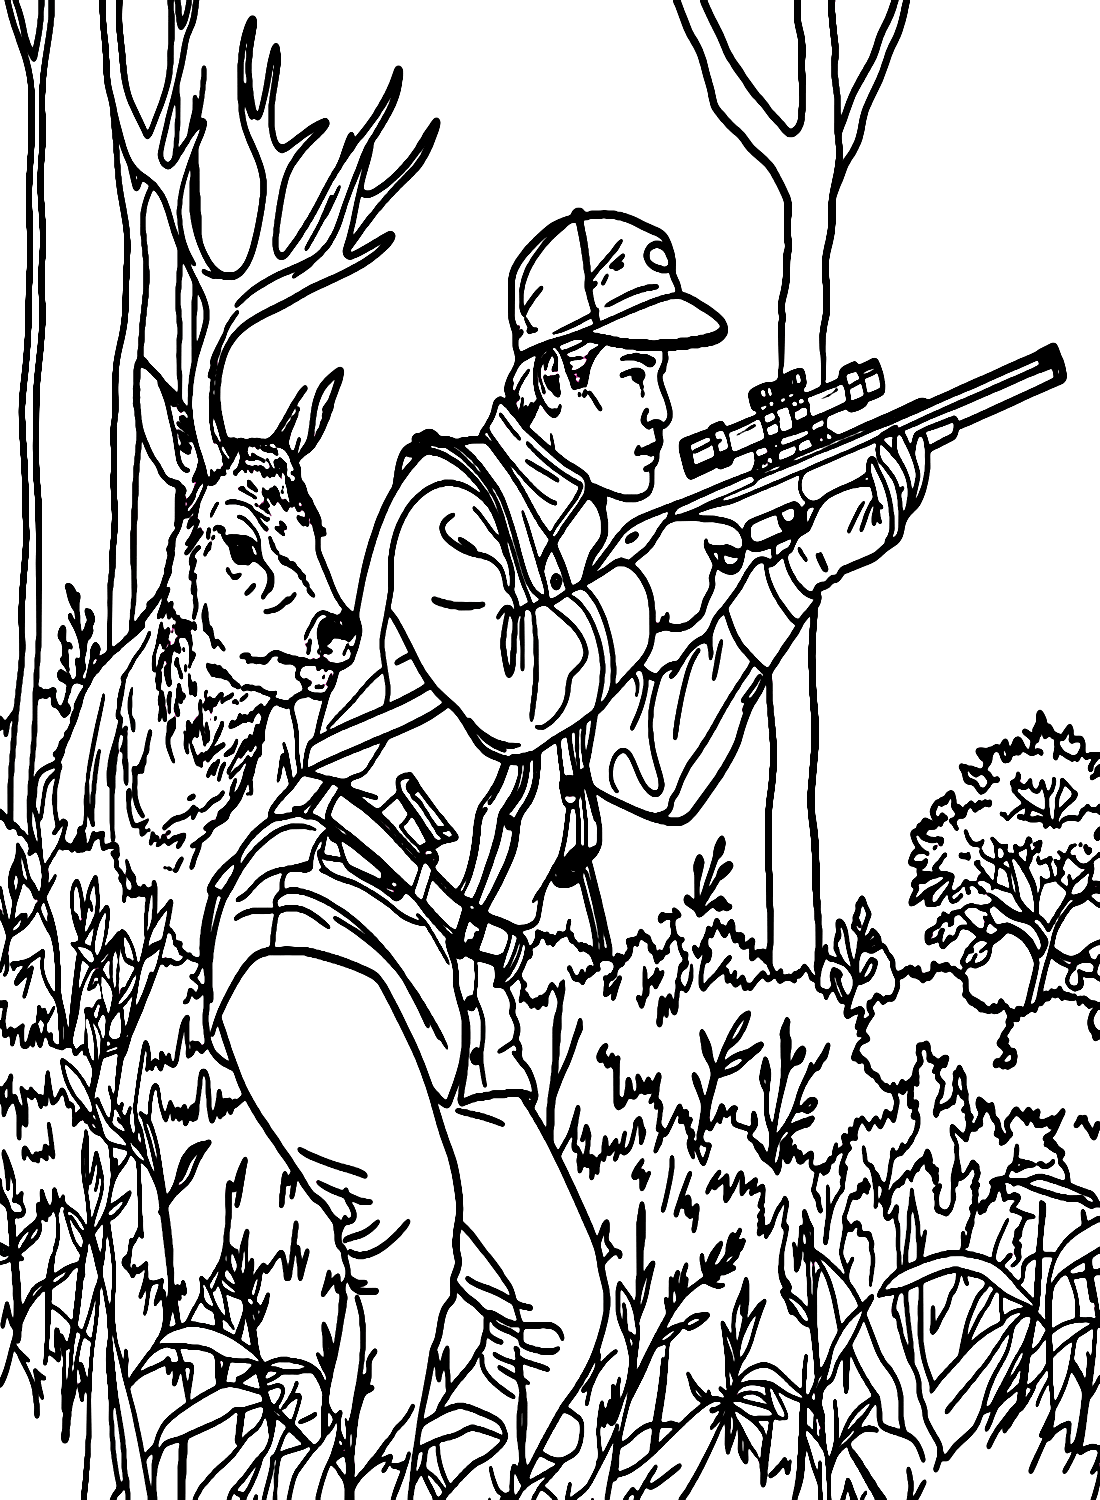 Hombre sujetando pistola cazando ciervos de caza